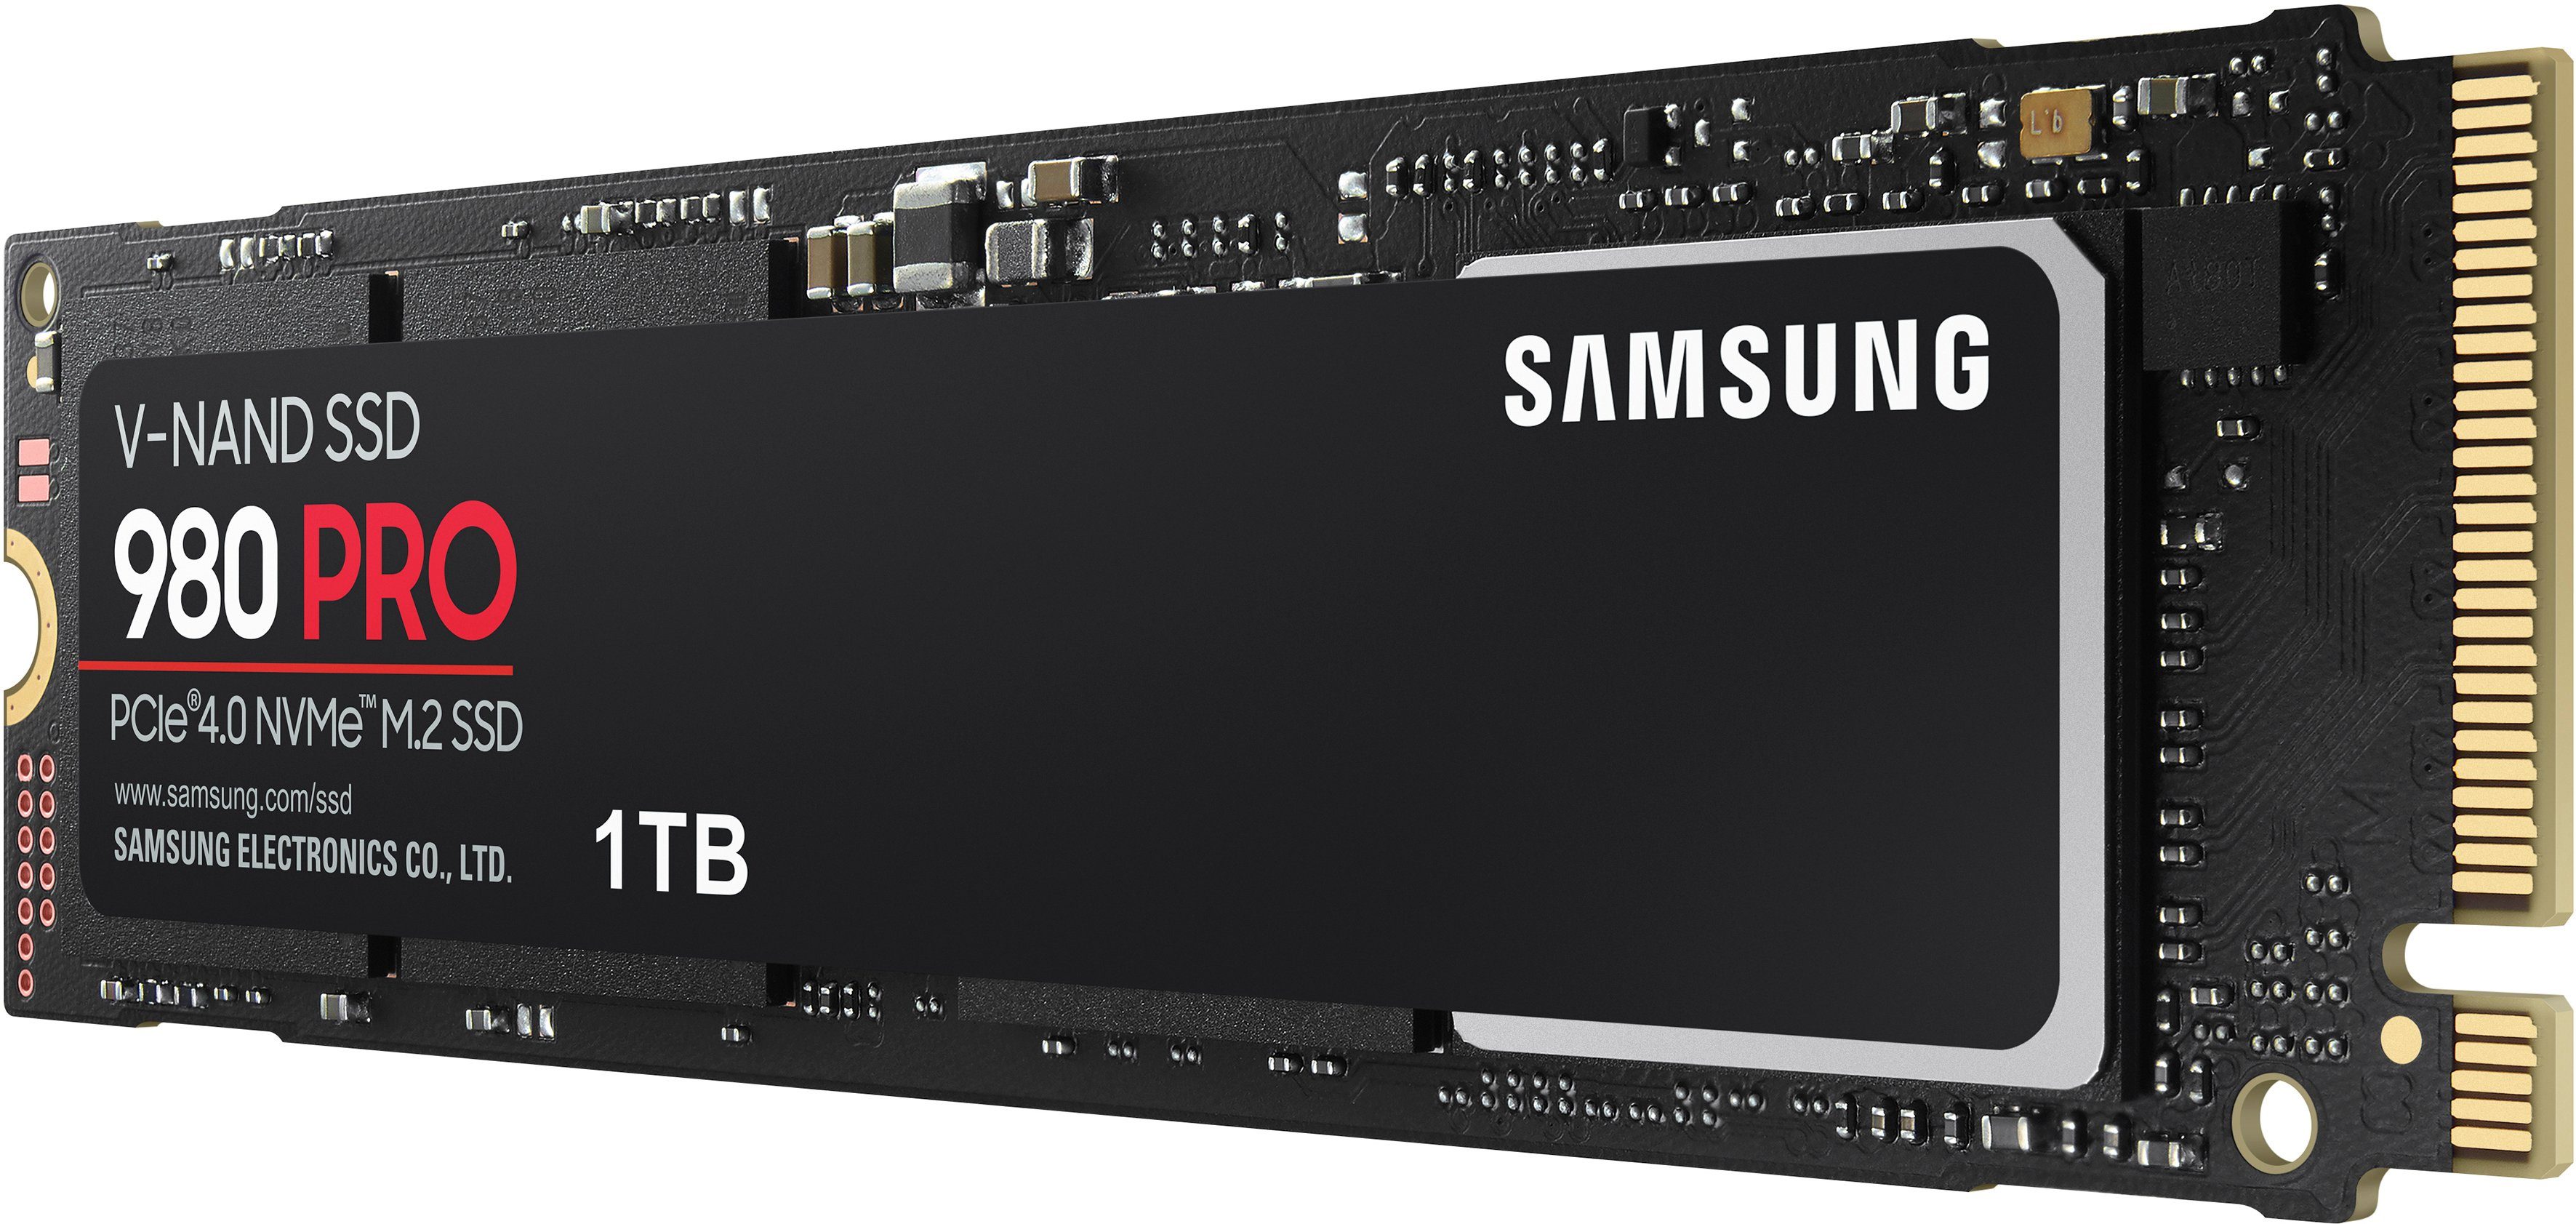 5000 980 TB) MB/S Schreibgeschwindigkeit, M.2 MB/S 5 PRO (1 Samsung Playstation 7000 SSD NVMe™, kompatibel, PCIe® 4.0 interne Lesegeschwindigkeit,